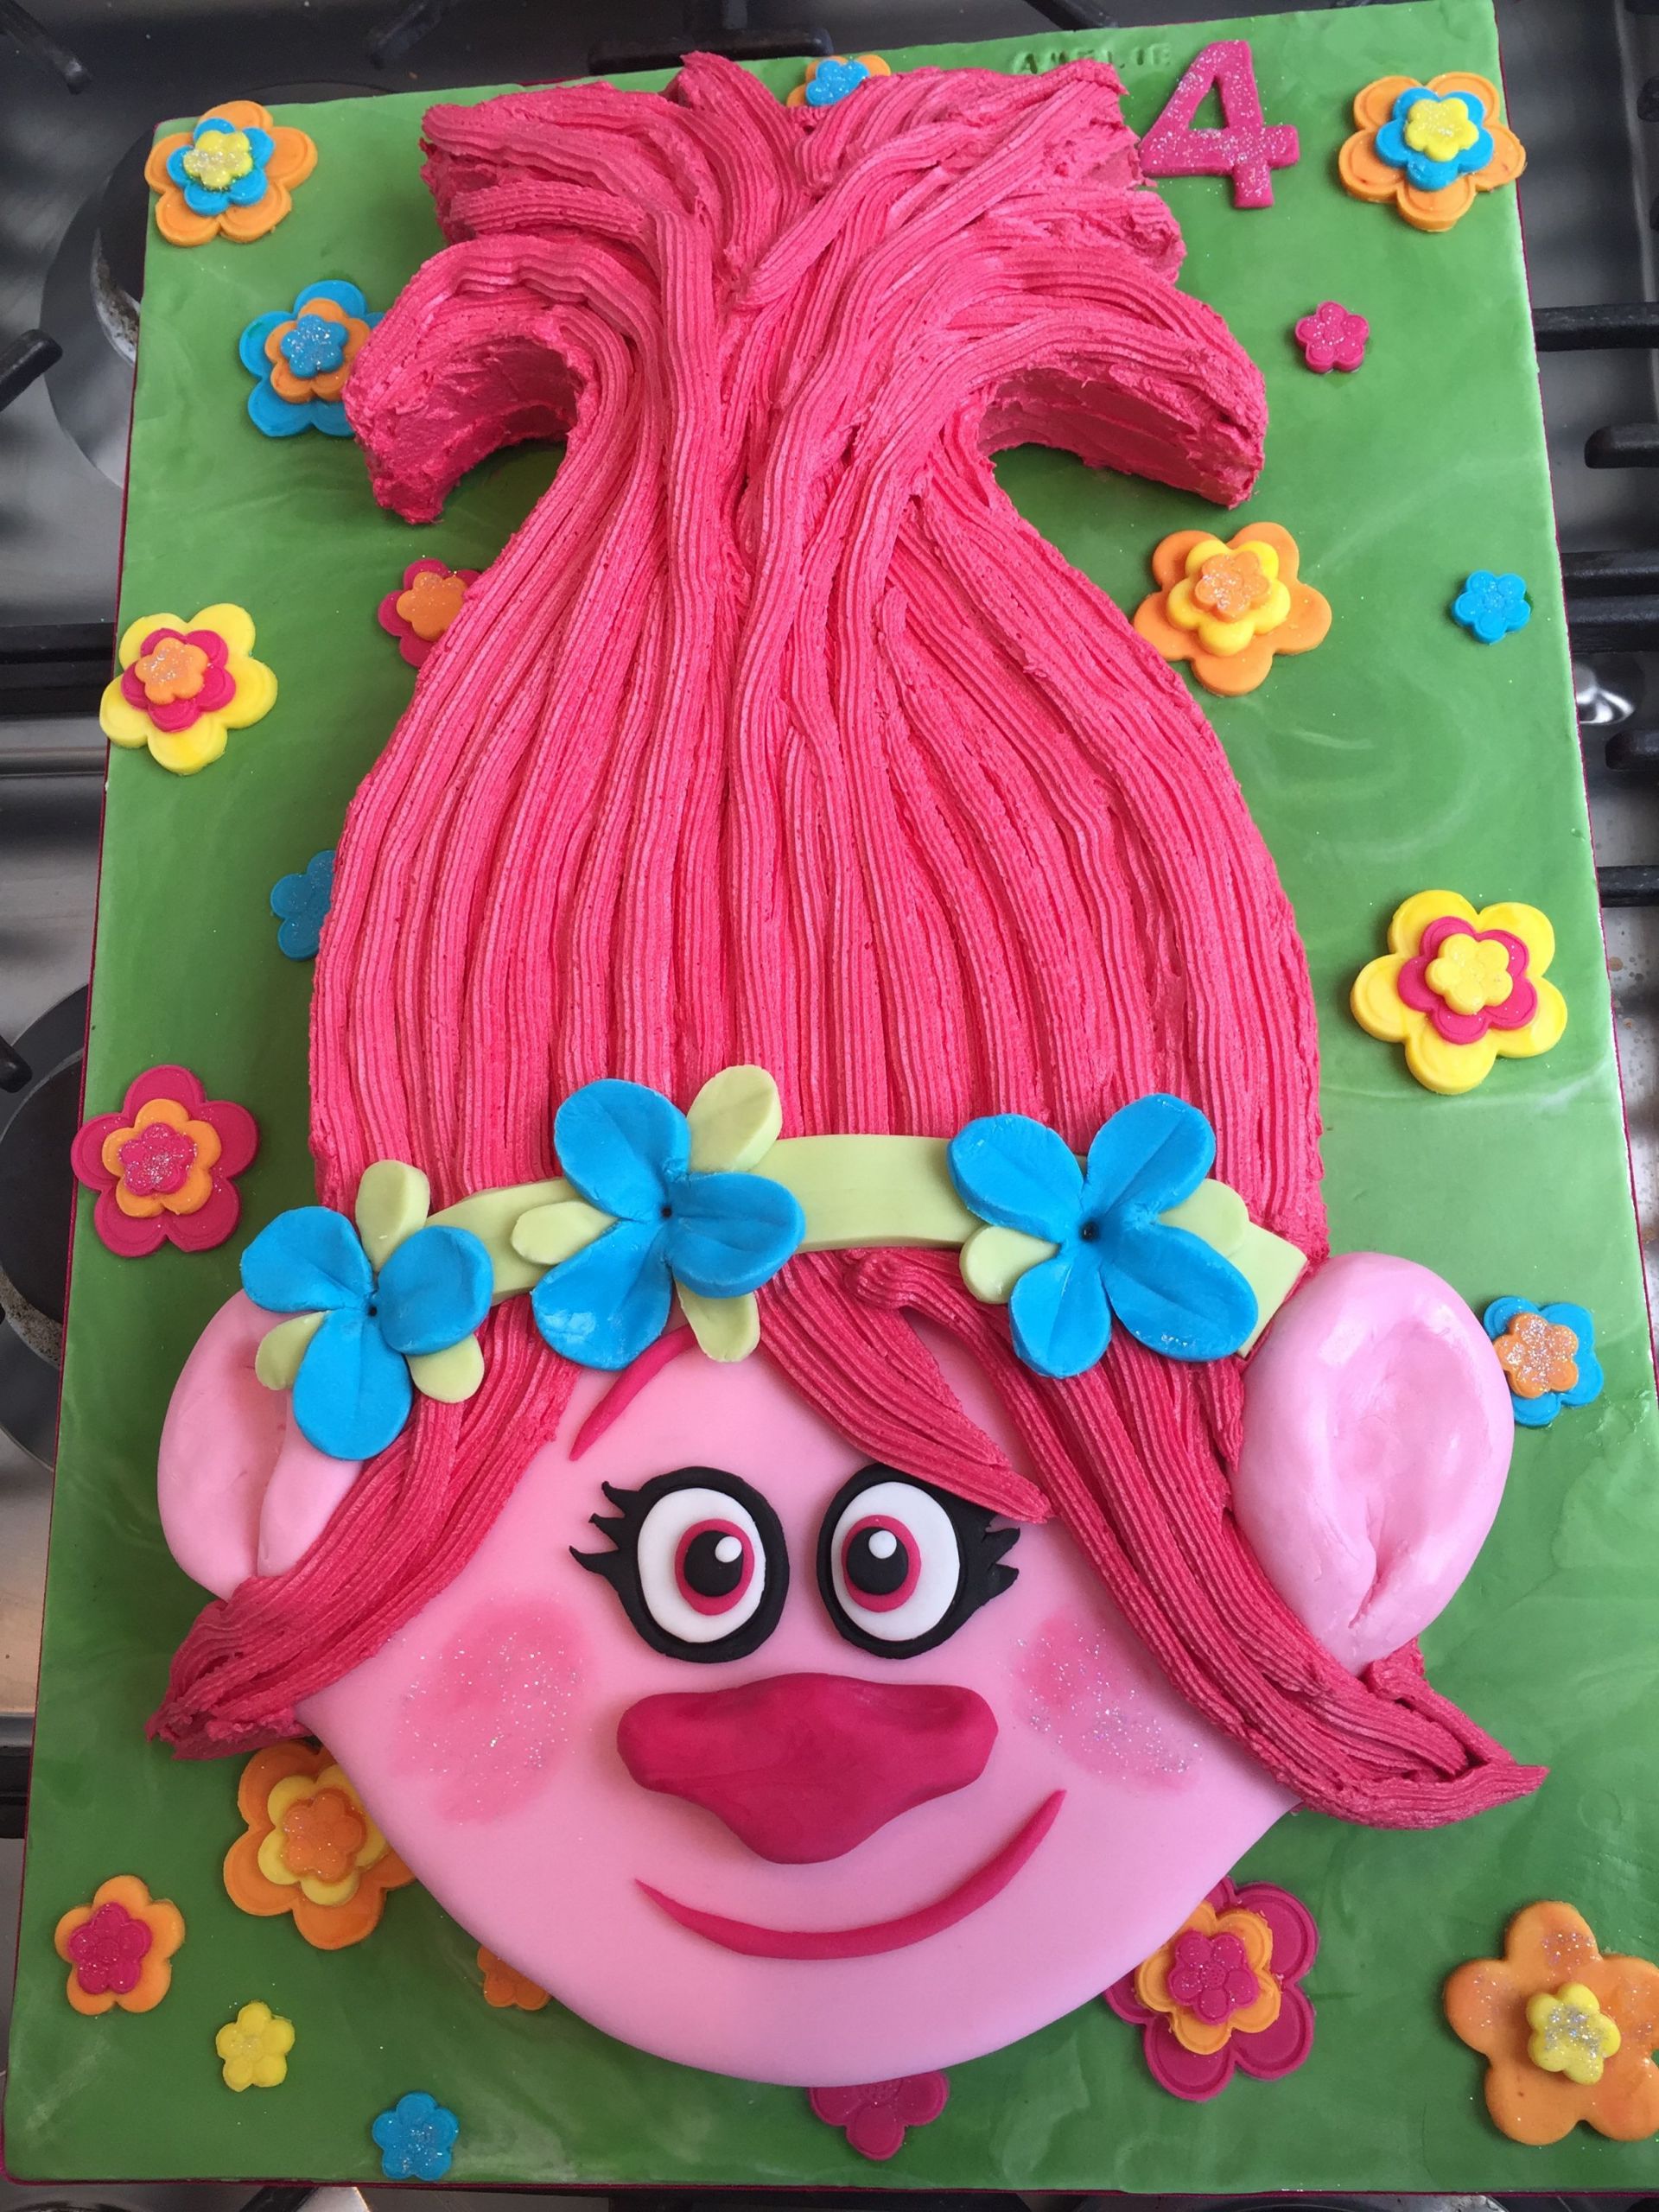 Poppy Troll Party Ideas
 Princess Poppy Trolls Cake